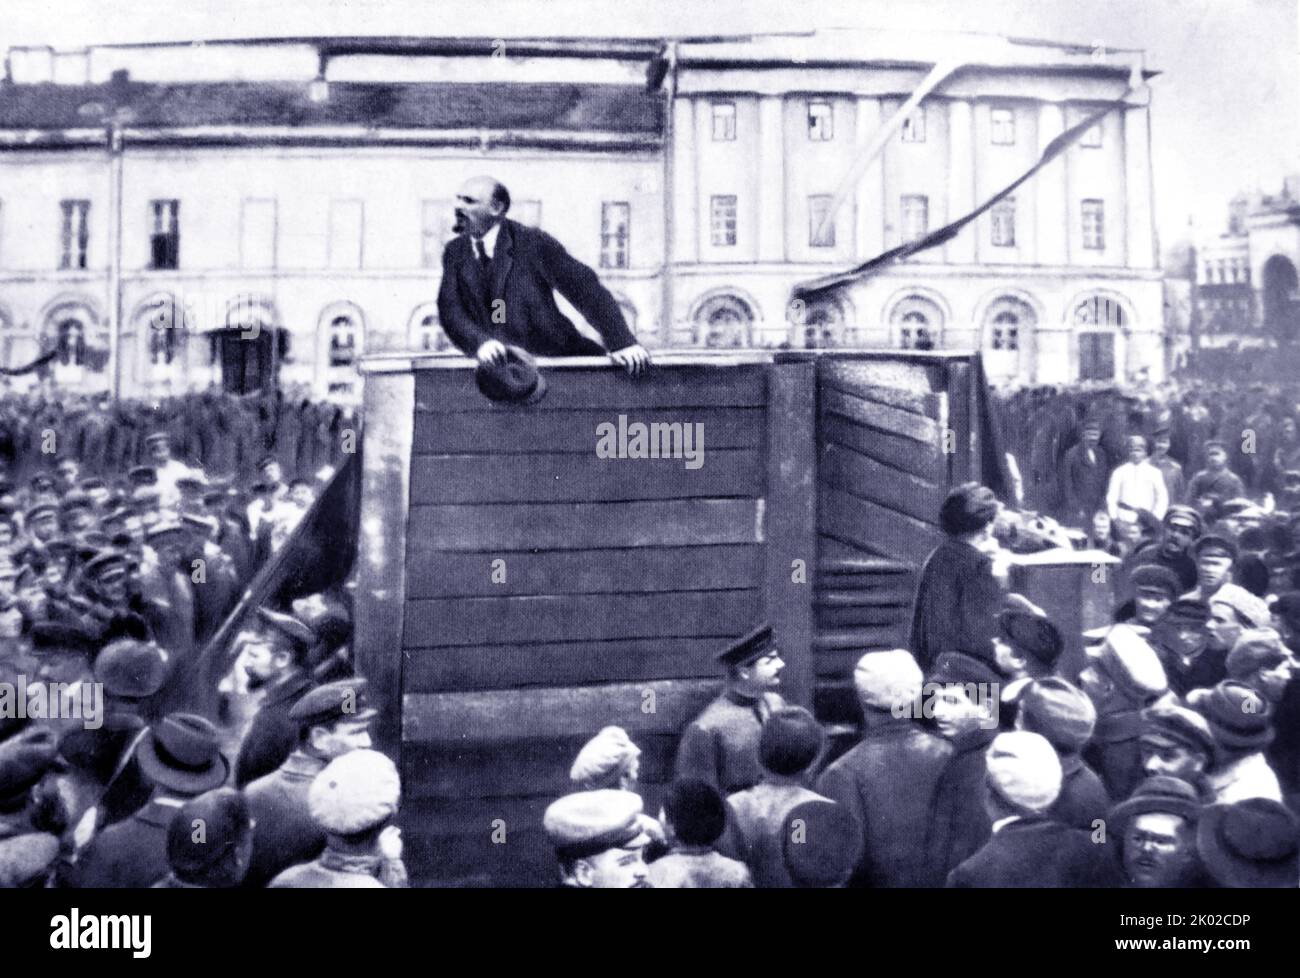 Vladimir Lenin parla a Mosca con i soldati dell'Armata Rossa in partenza per il fronte polacco, nel 1920. Fotografia di G. P. Goldshtein. Leon Trotsky e Lev Borisovich Kamenev sono stati spazzolati via aria dalla fotografia Foto Stock